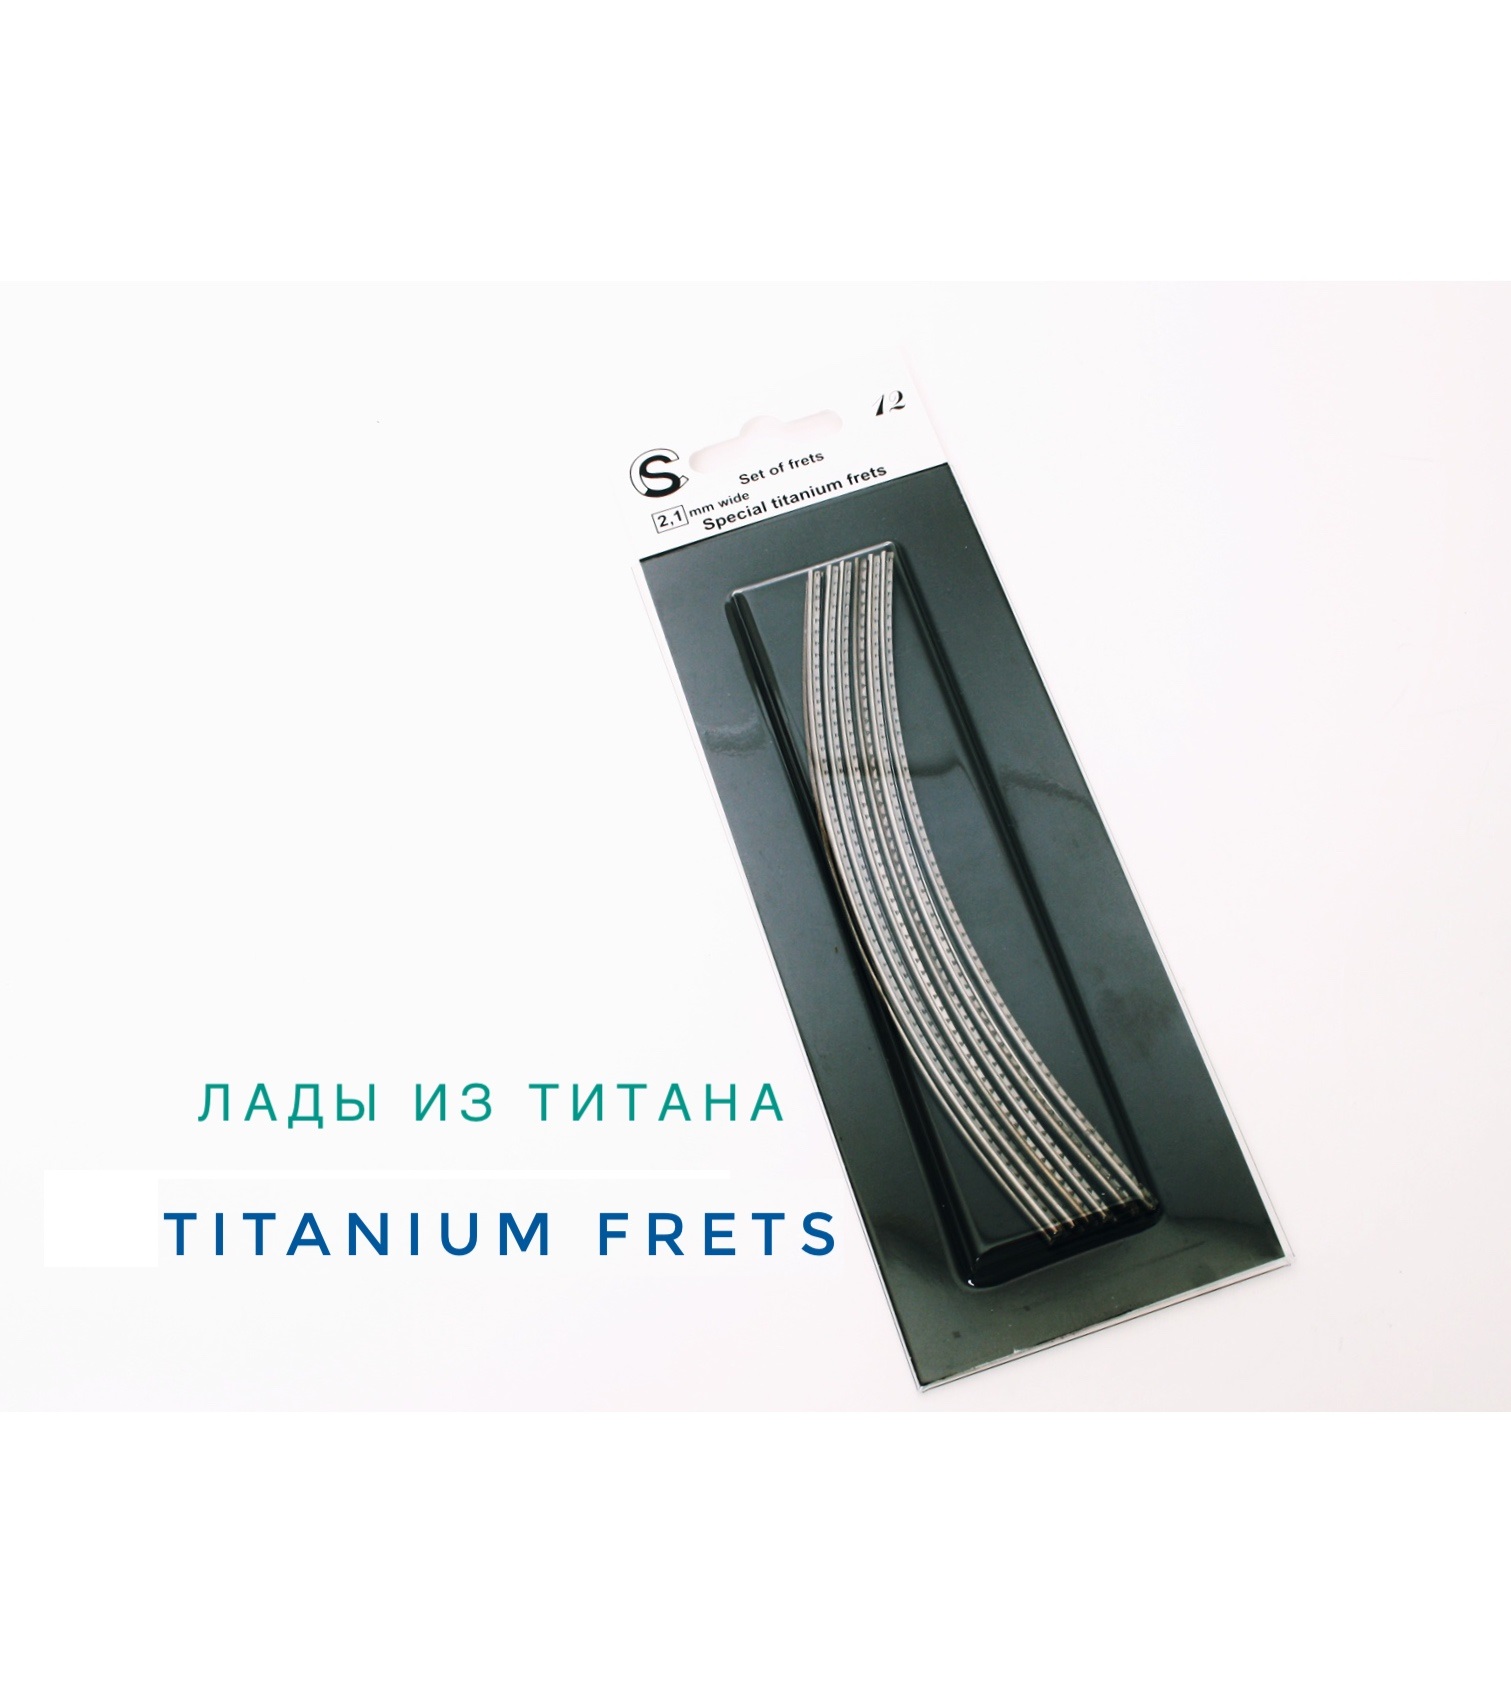 Features of materials: titanium frets (STI)